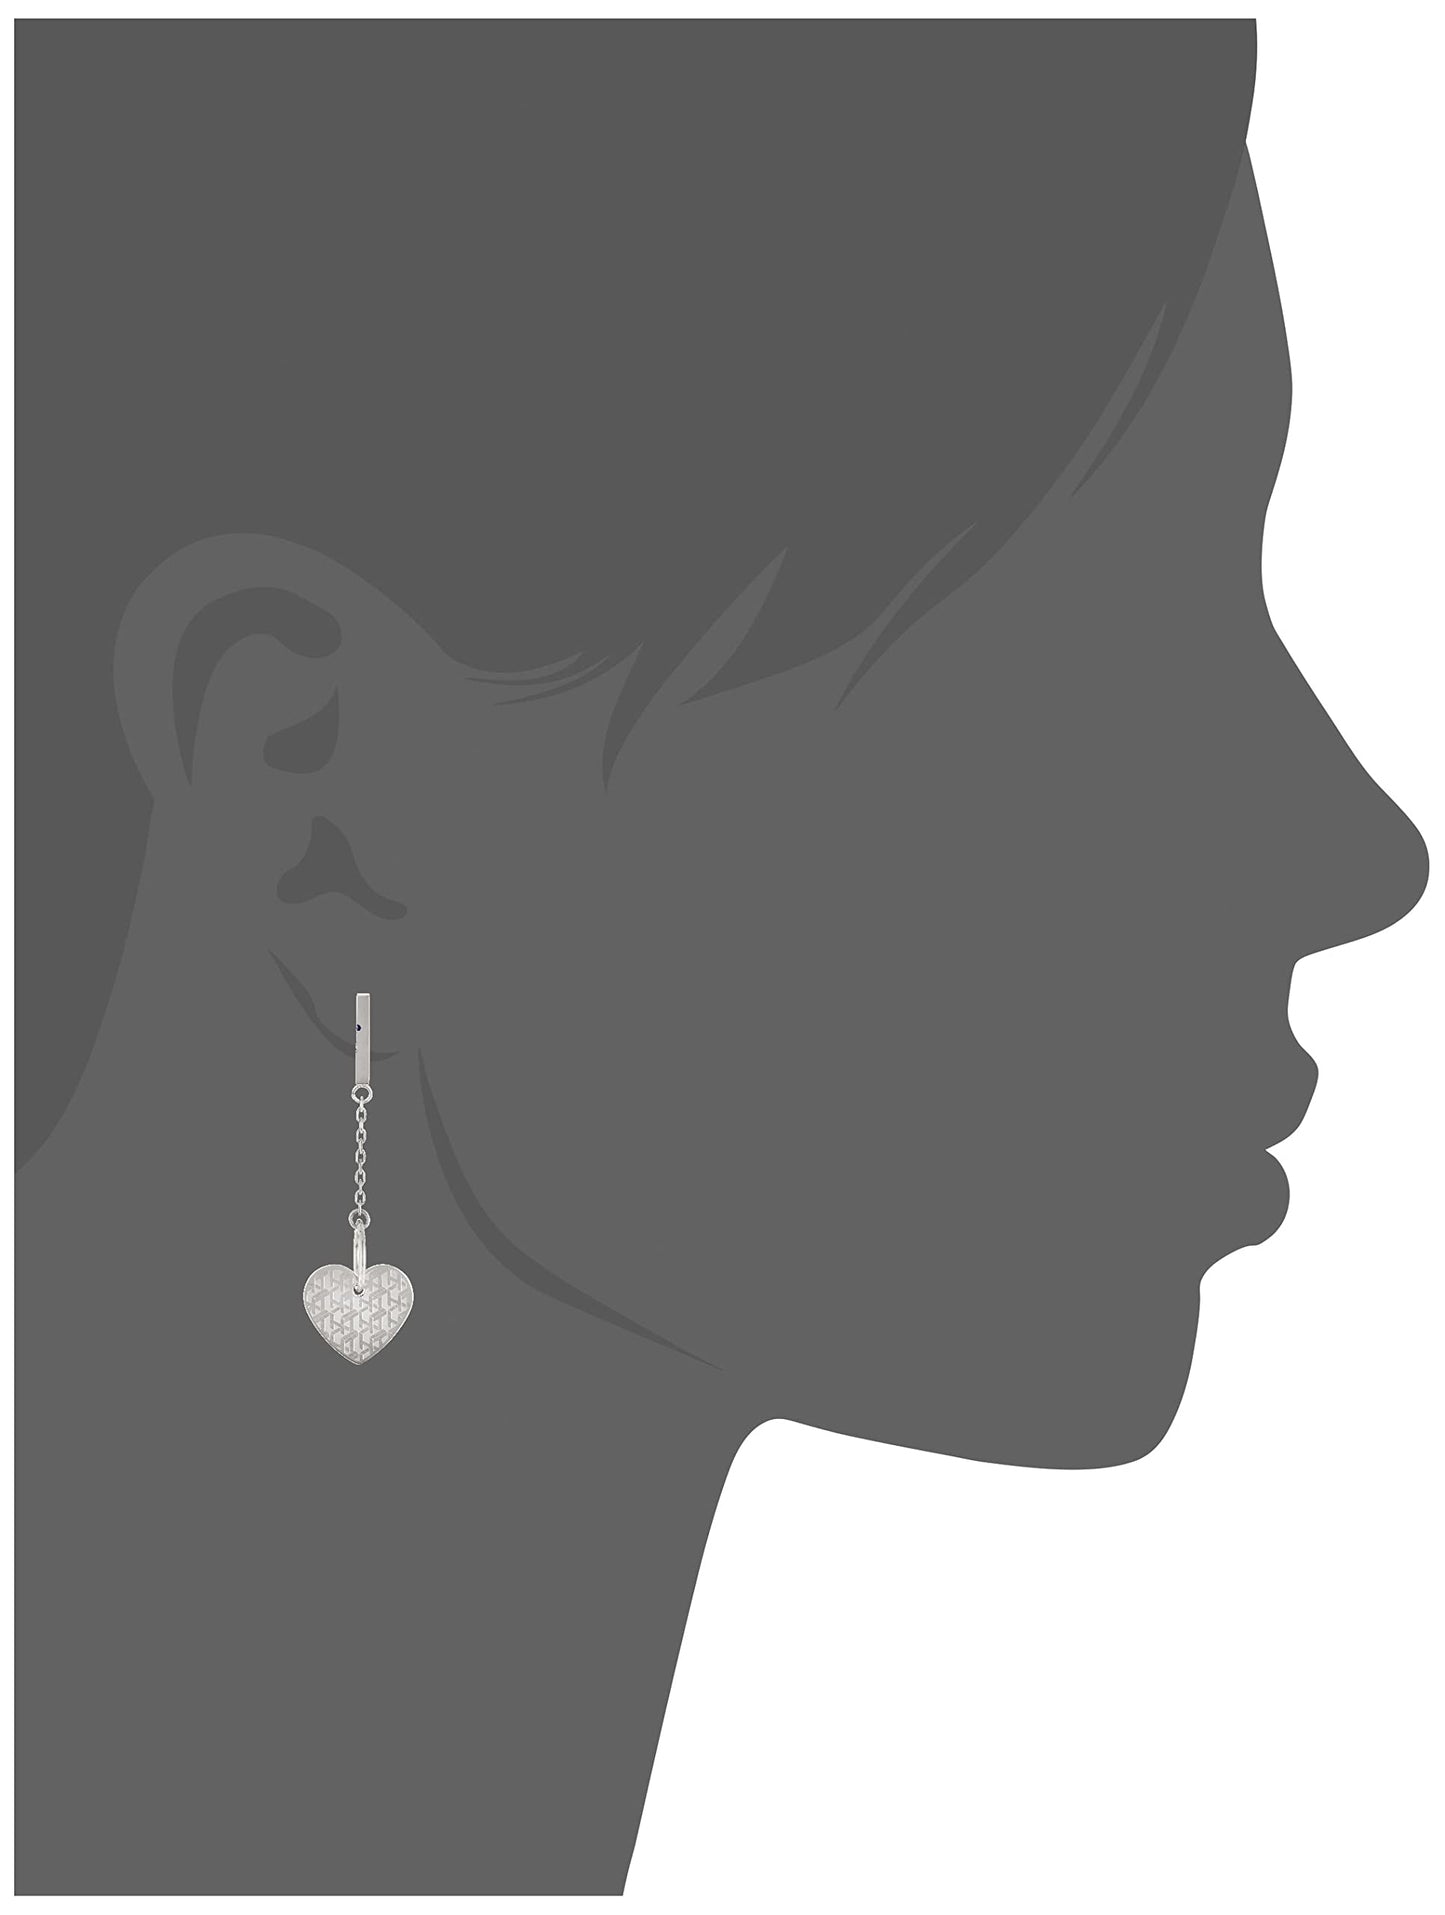 Tommy Hilfiger Women Silver Metal Stainless Steel Earrings - 2780302, One Size